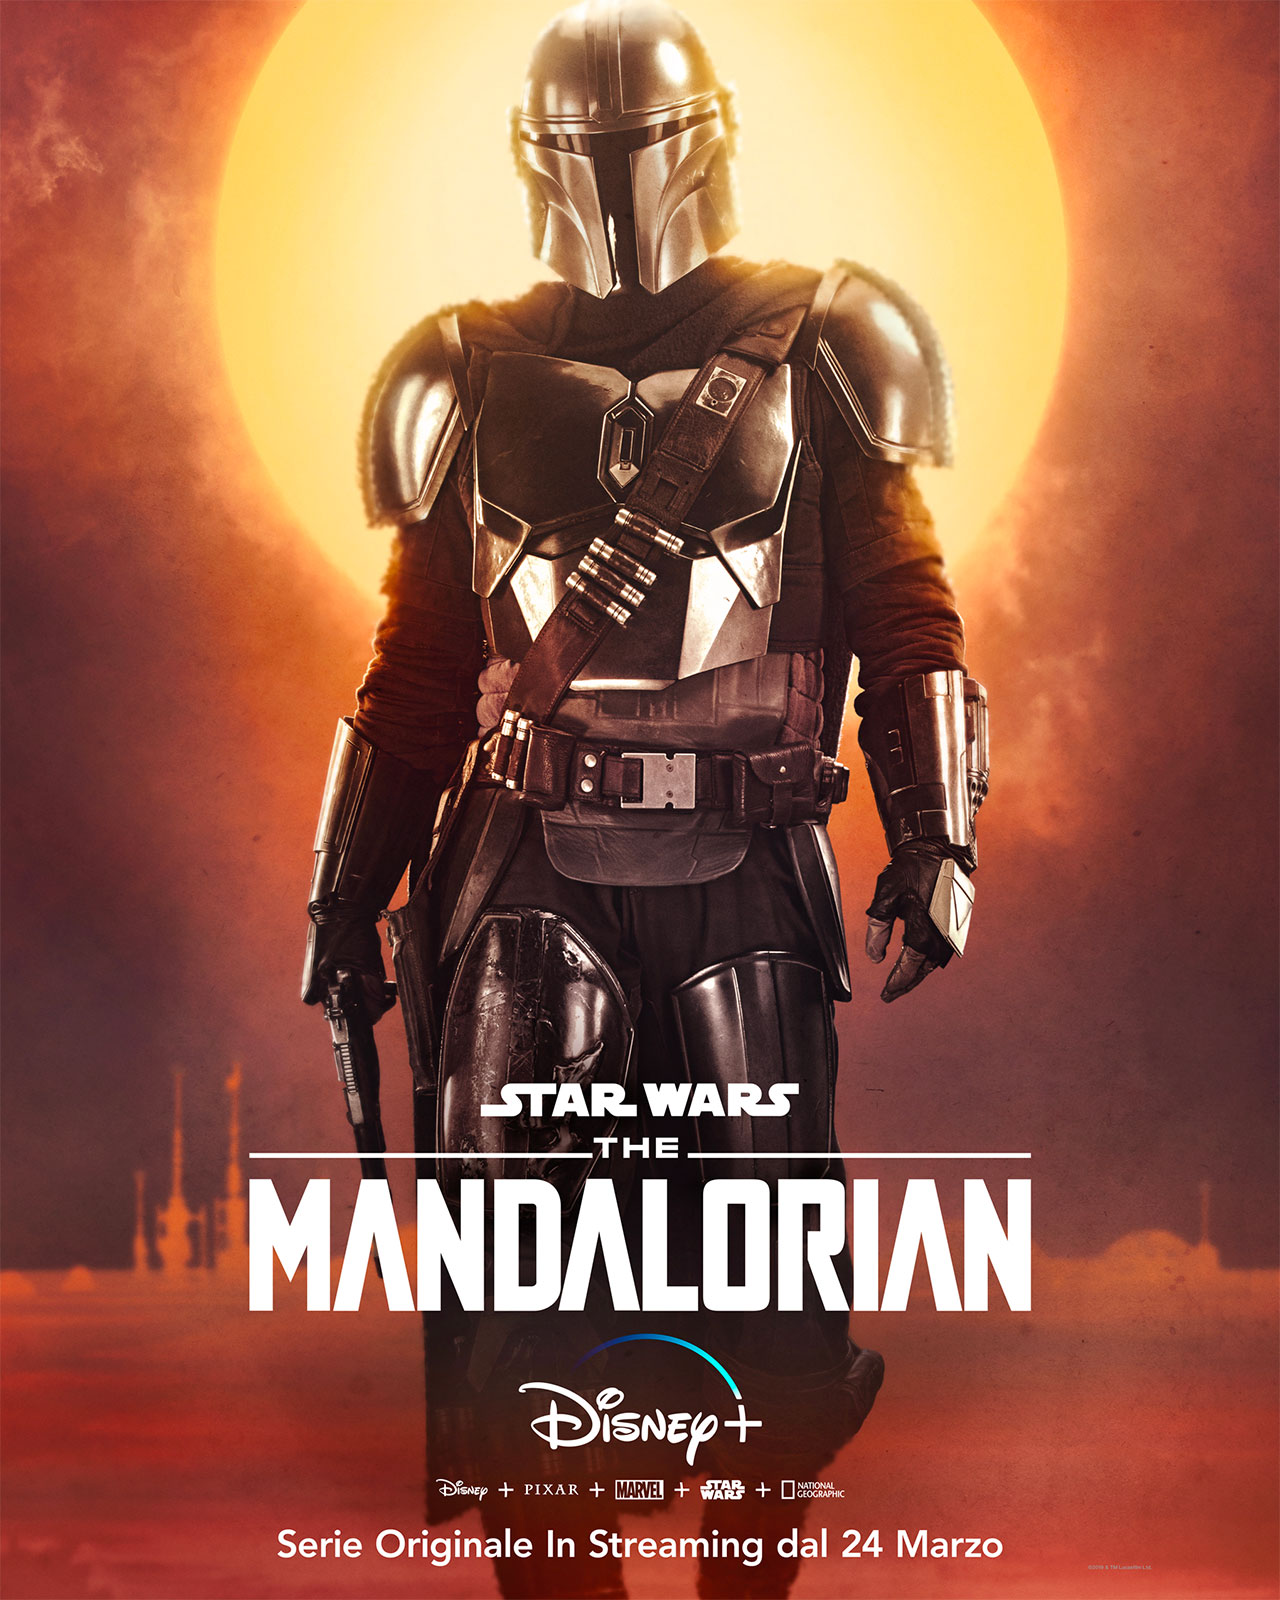  Dall'articolo: The Mandalorian, l'attesa  quasi finita. Ecco i character poster della serie Disney+.